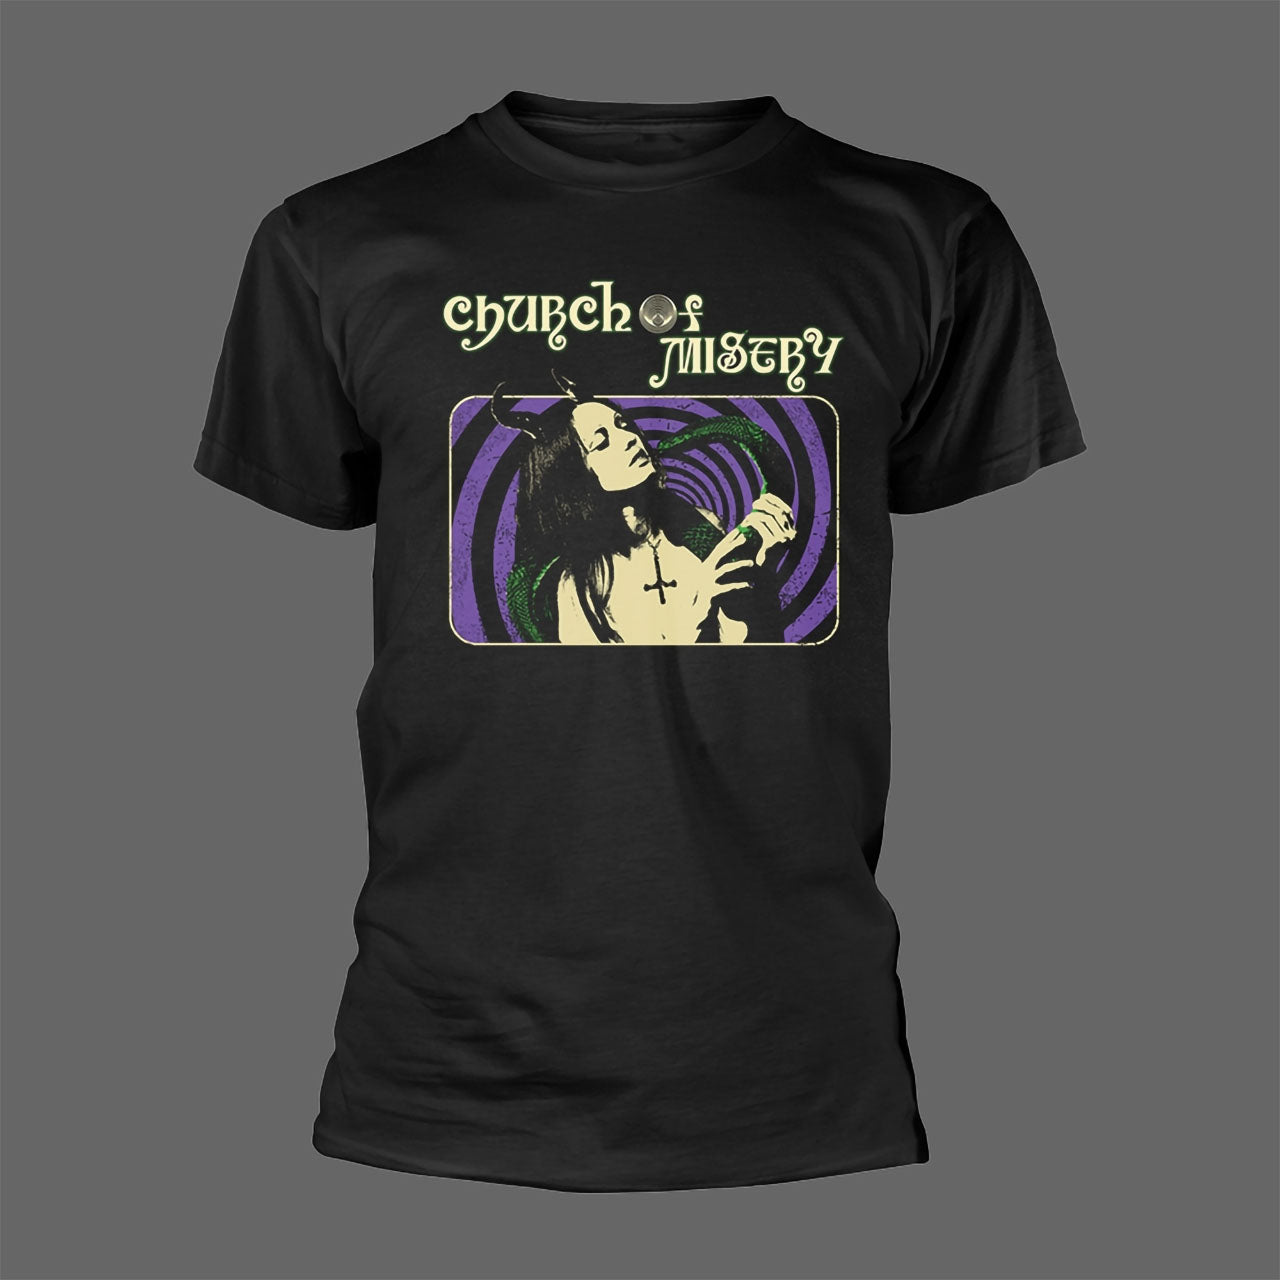 Church of Misery - Snake Girl (T-Shirt)